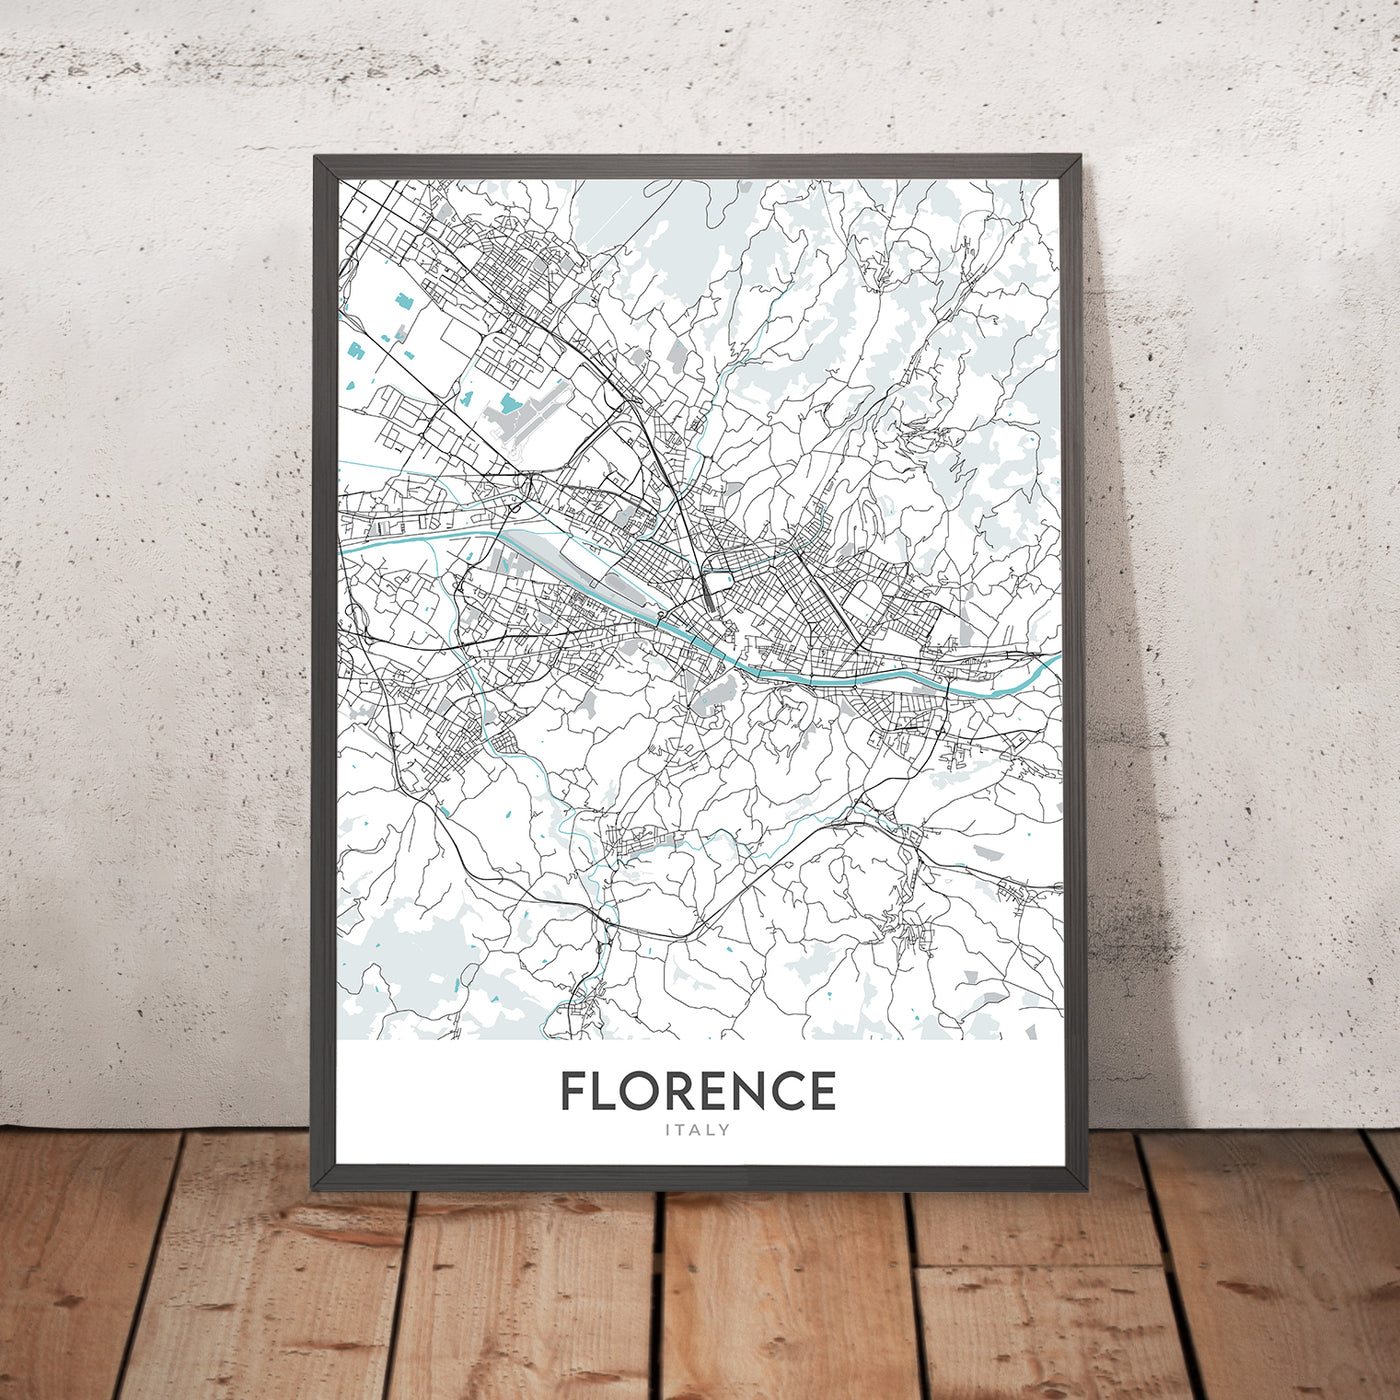 Moderner Stadtplan von Florenz, Italien: Dom, Uffizien, Ponte Vecchio, Santa Croce, Oltrarno